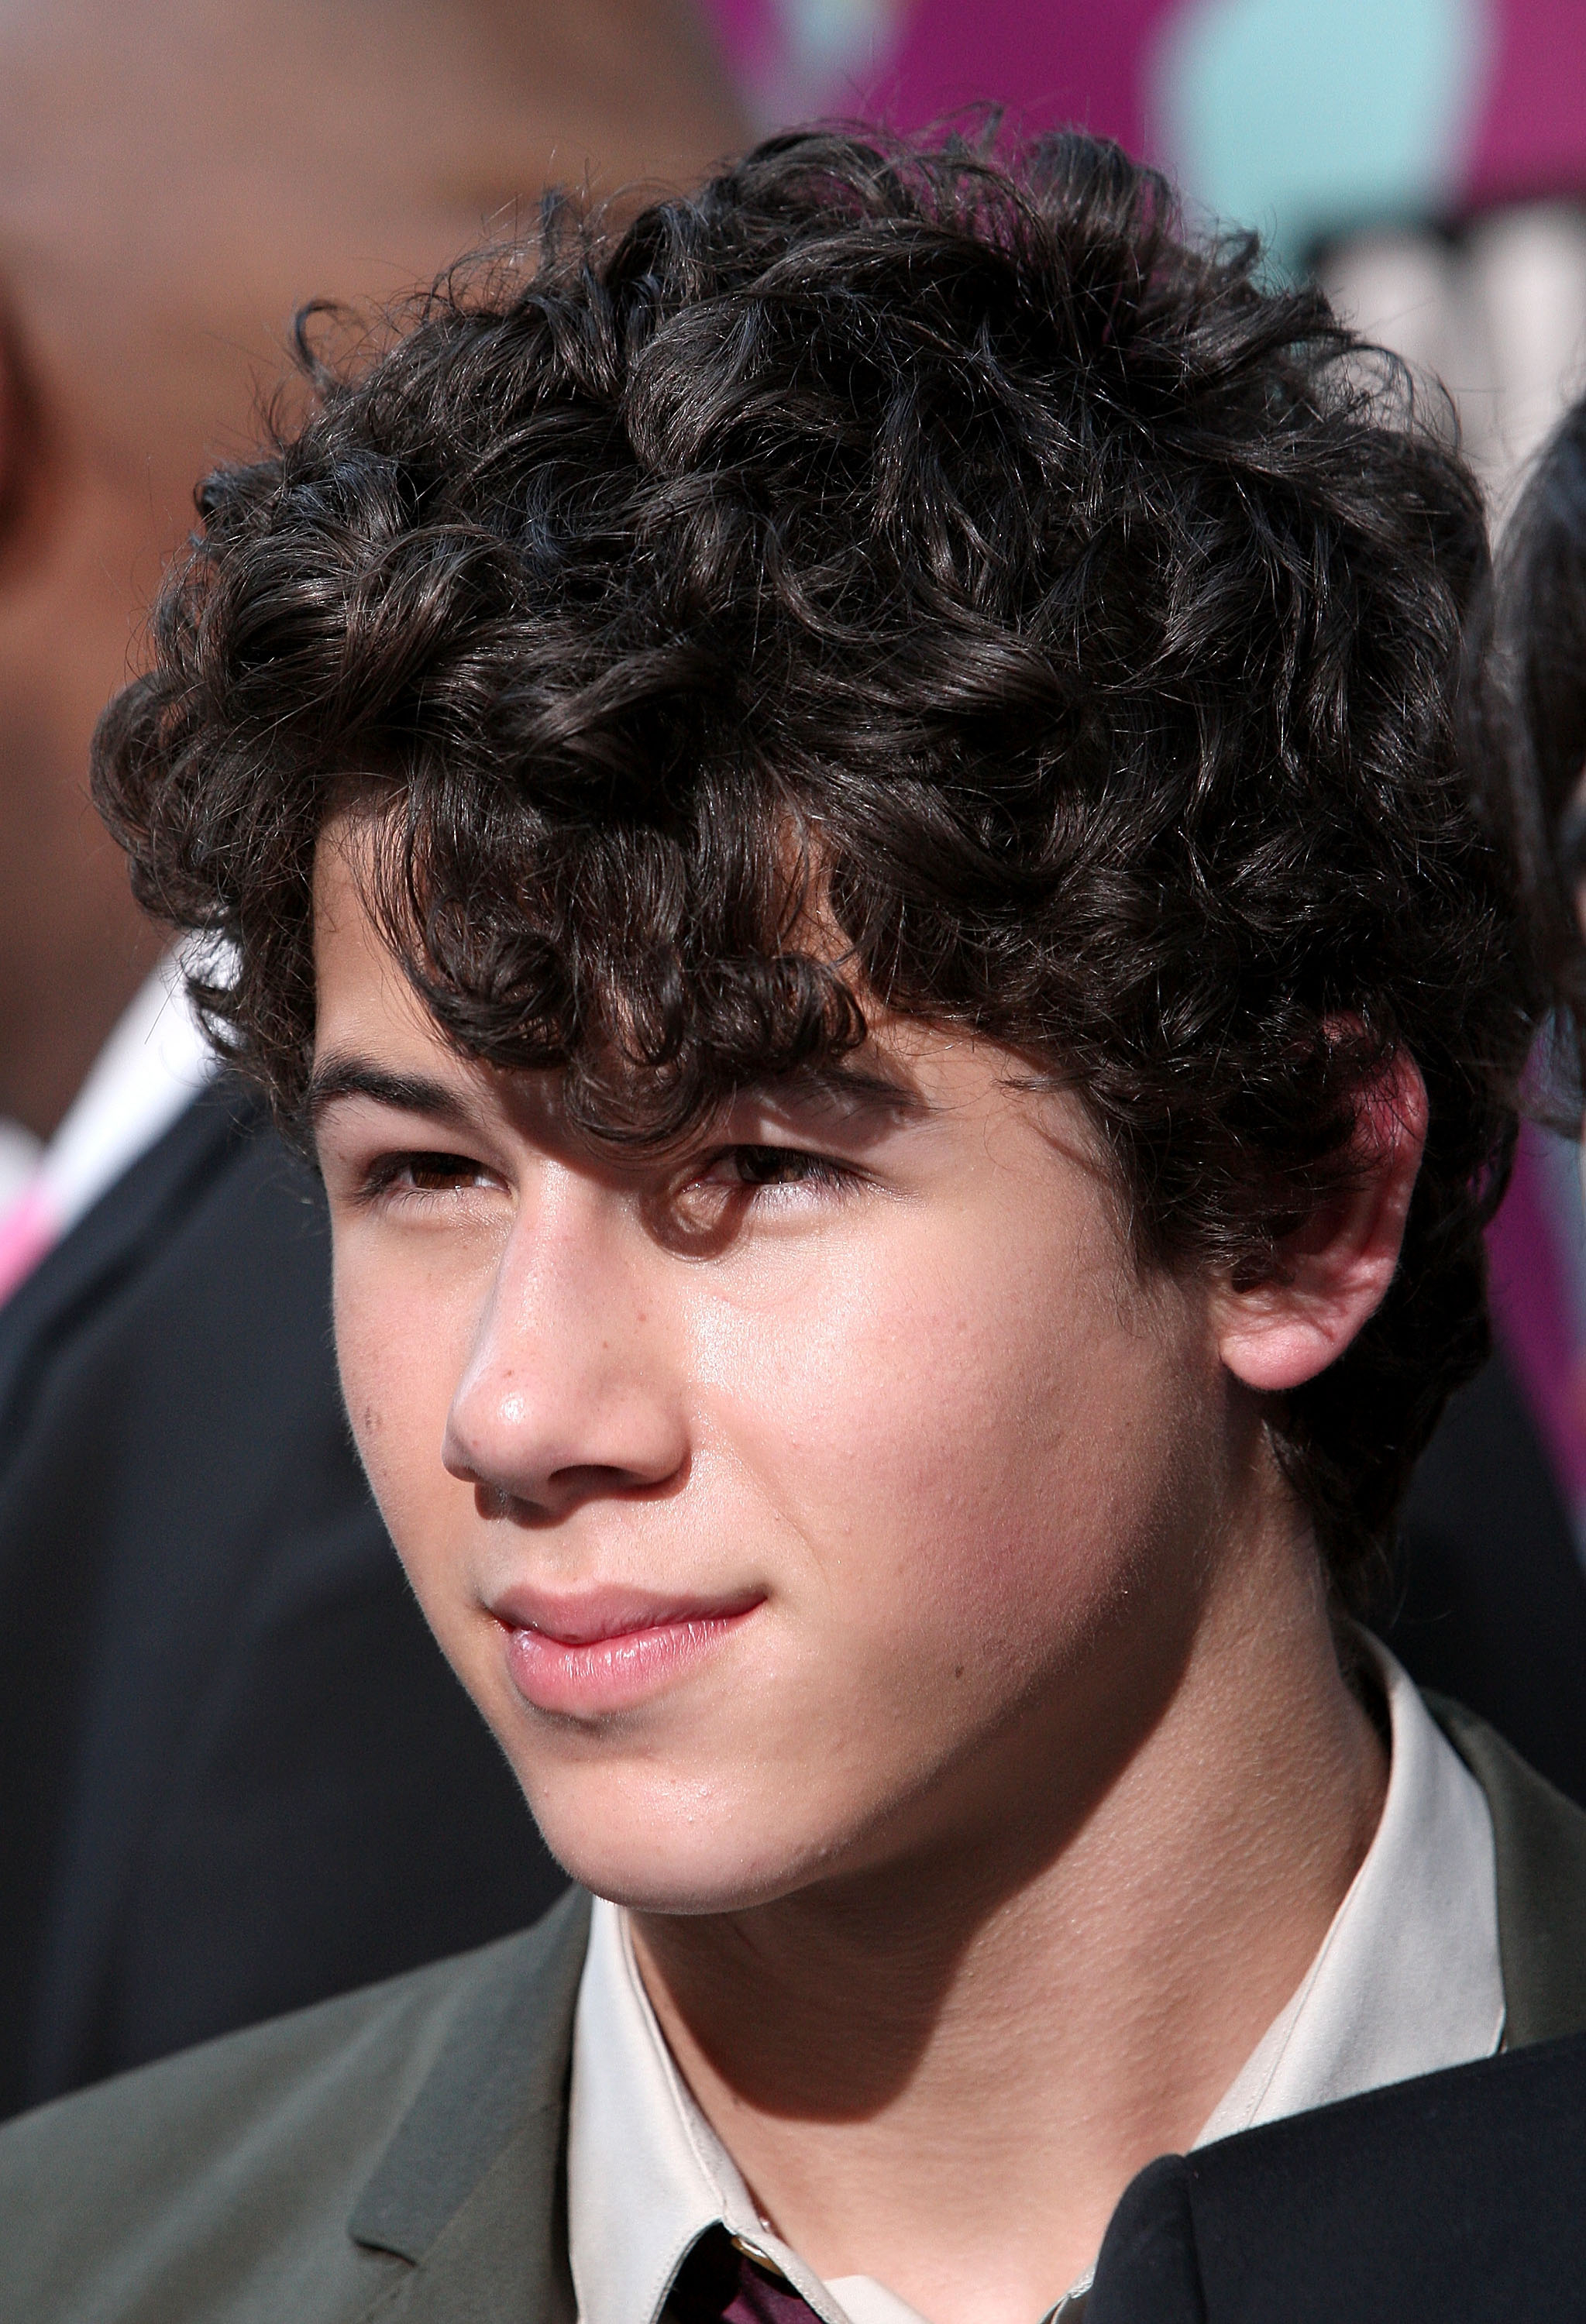 Nick Jonas on the red carpet